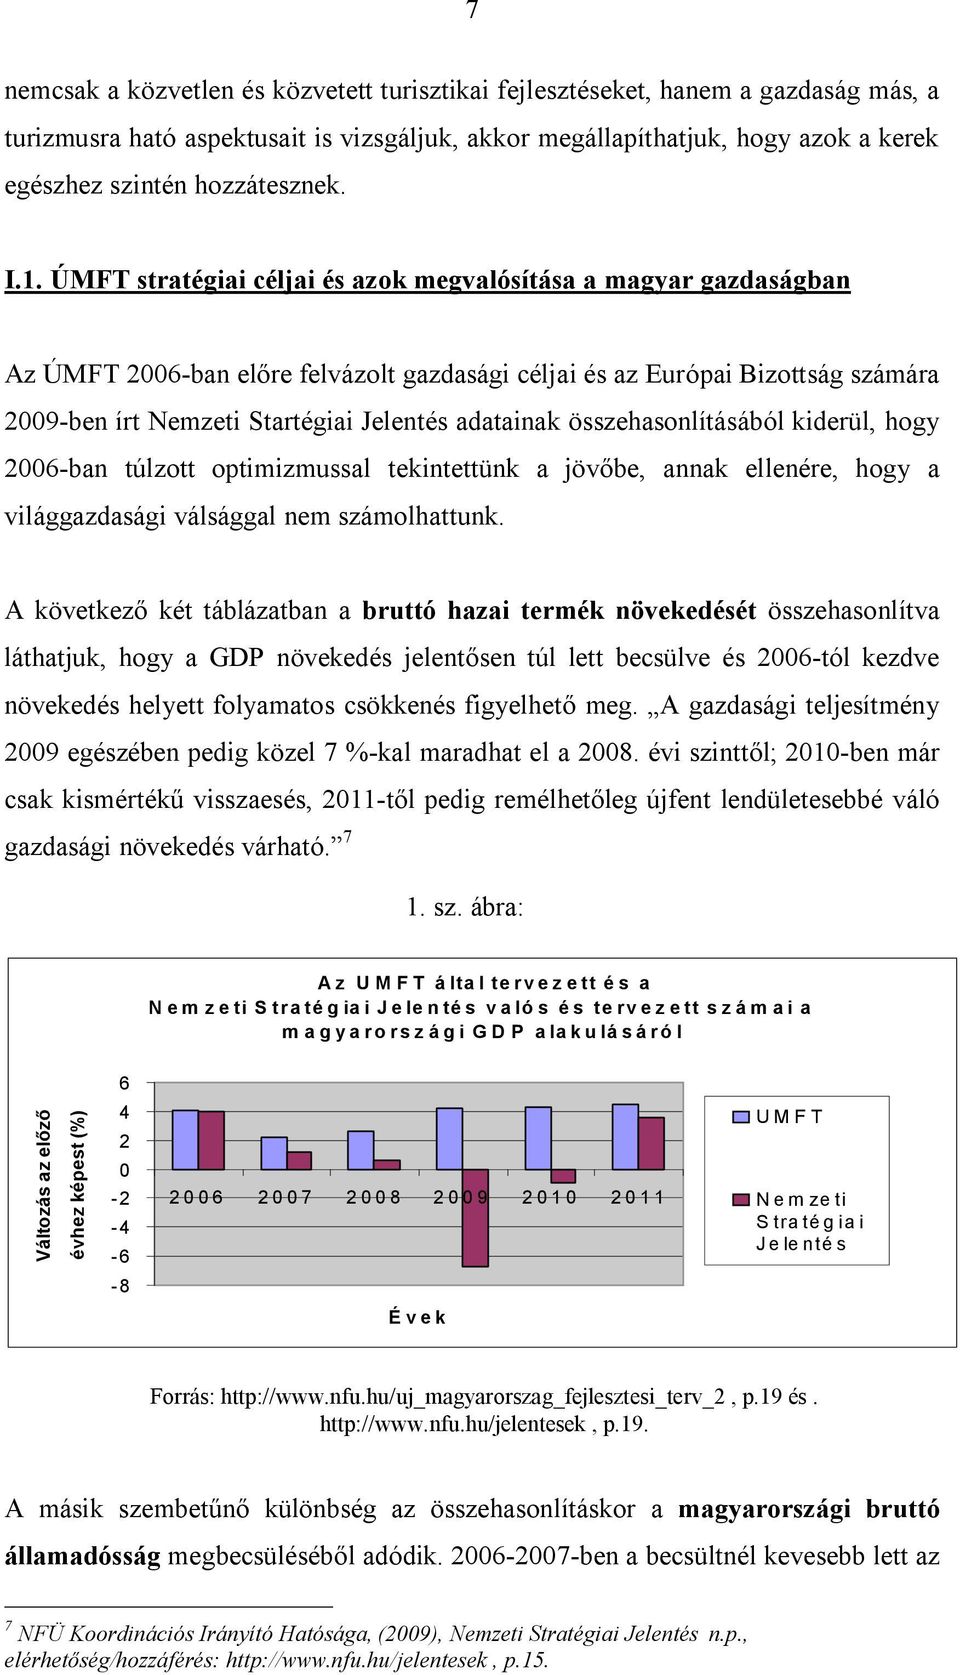 ÚMFT stratégiai céljai és azok megvalósítása a magyar gazdaságban Az ÚMFT 2006-ban előre felvázolt gazdasági céljai és az Európai Bizottság számára 2009-ben írt Nemzeti Startégiai Jelentés adatainak